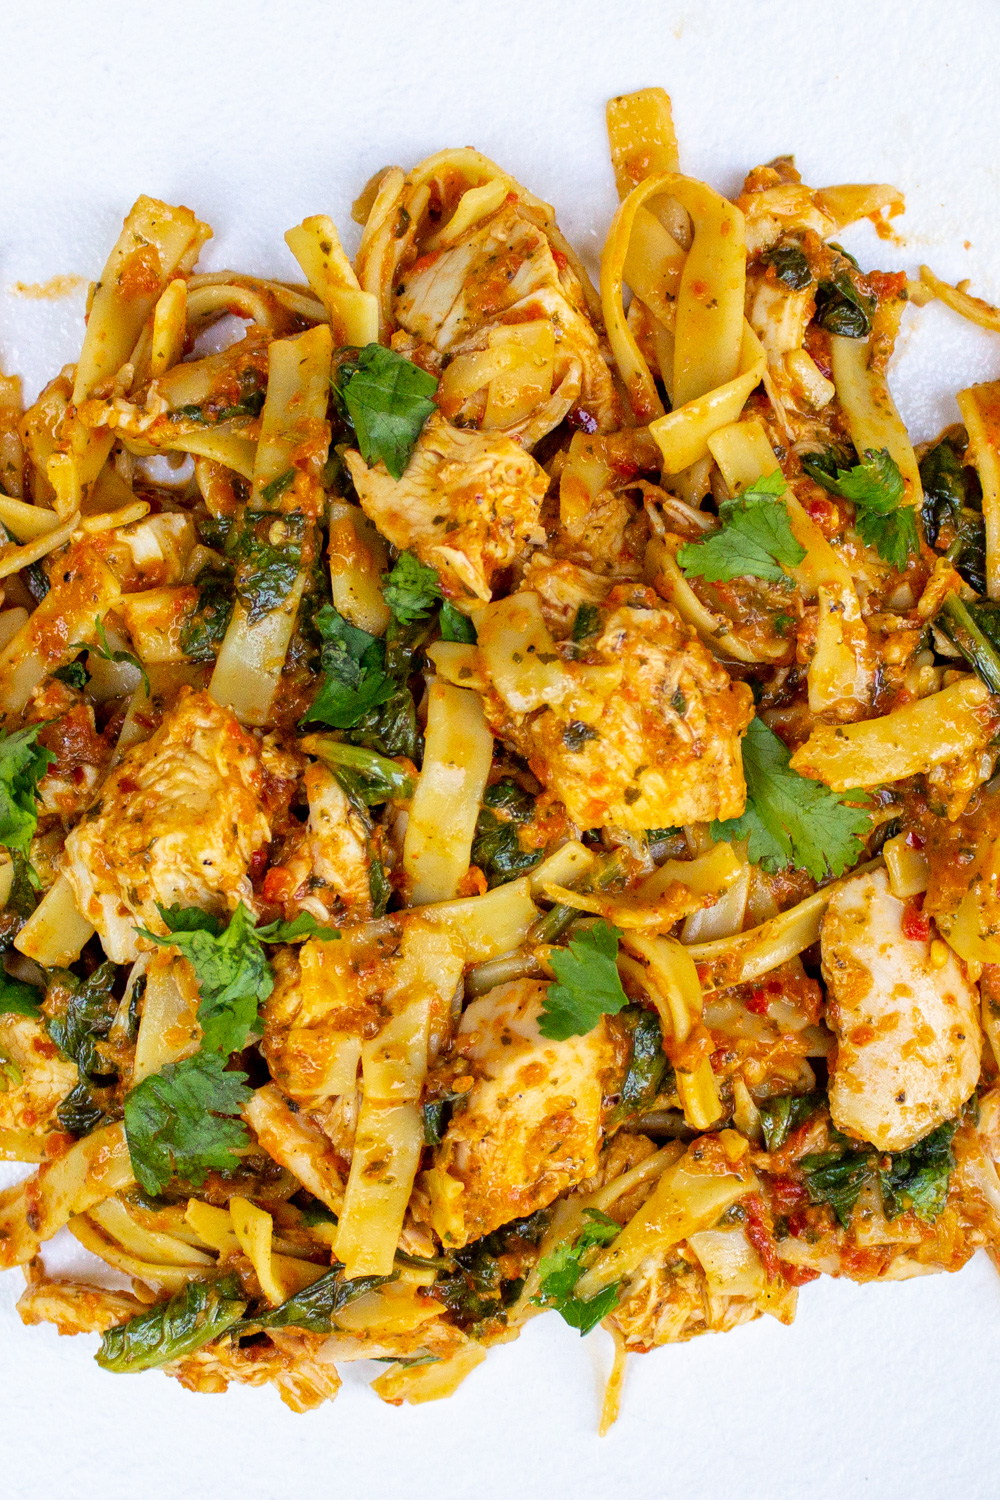 spicy chicken pasta on plate.